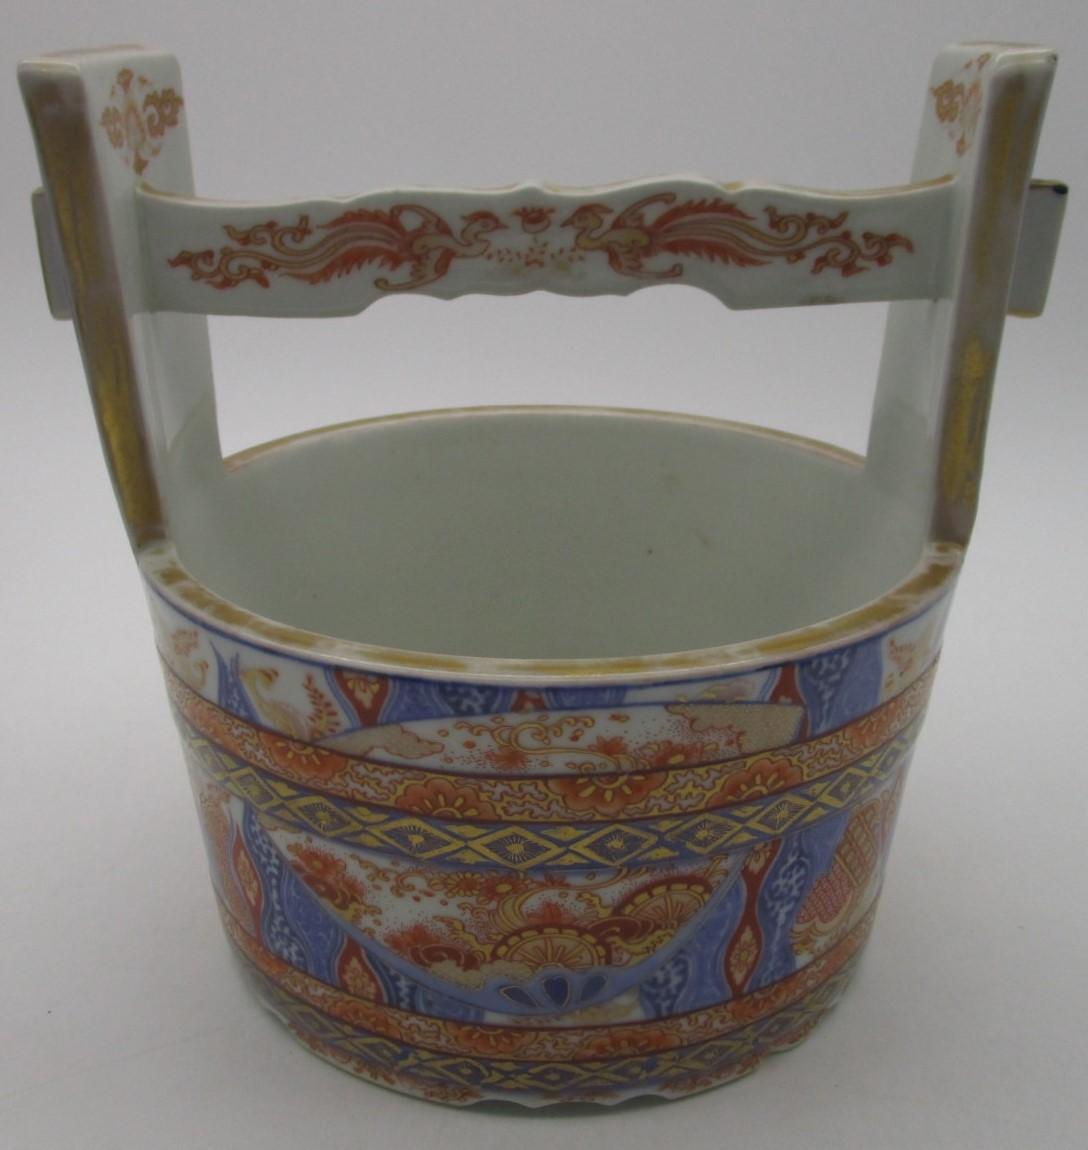 Vase seau à eau ou teoke en porcelaine japonaise du début de l'ère Meiji, vers 1880, présentant une belle peinture à la main en bleu cobalt sous glaçure et un émaillage polychrome en rouge et de généreux détails en or. La belle forme de ce vase